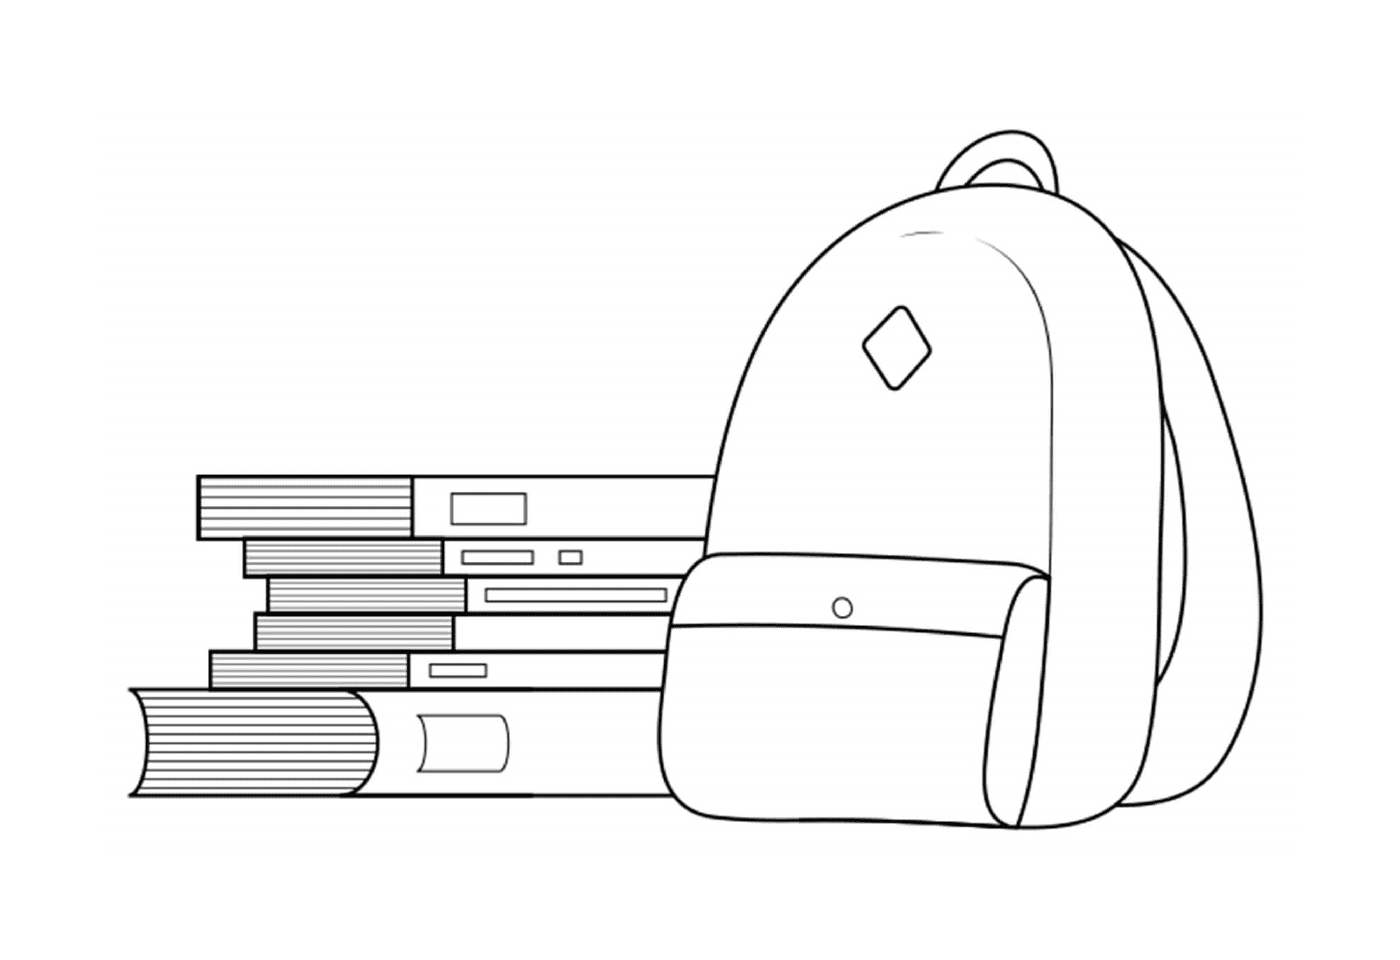  Bag, books, backpack 